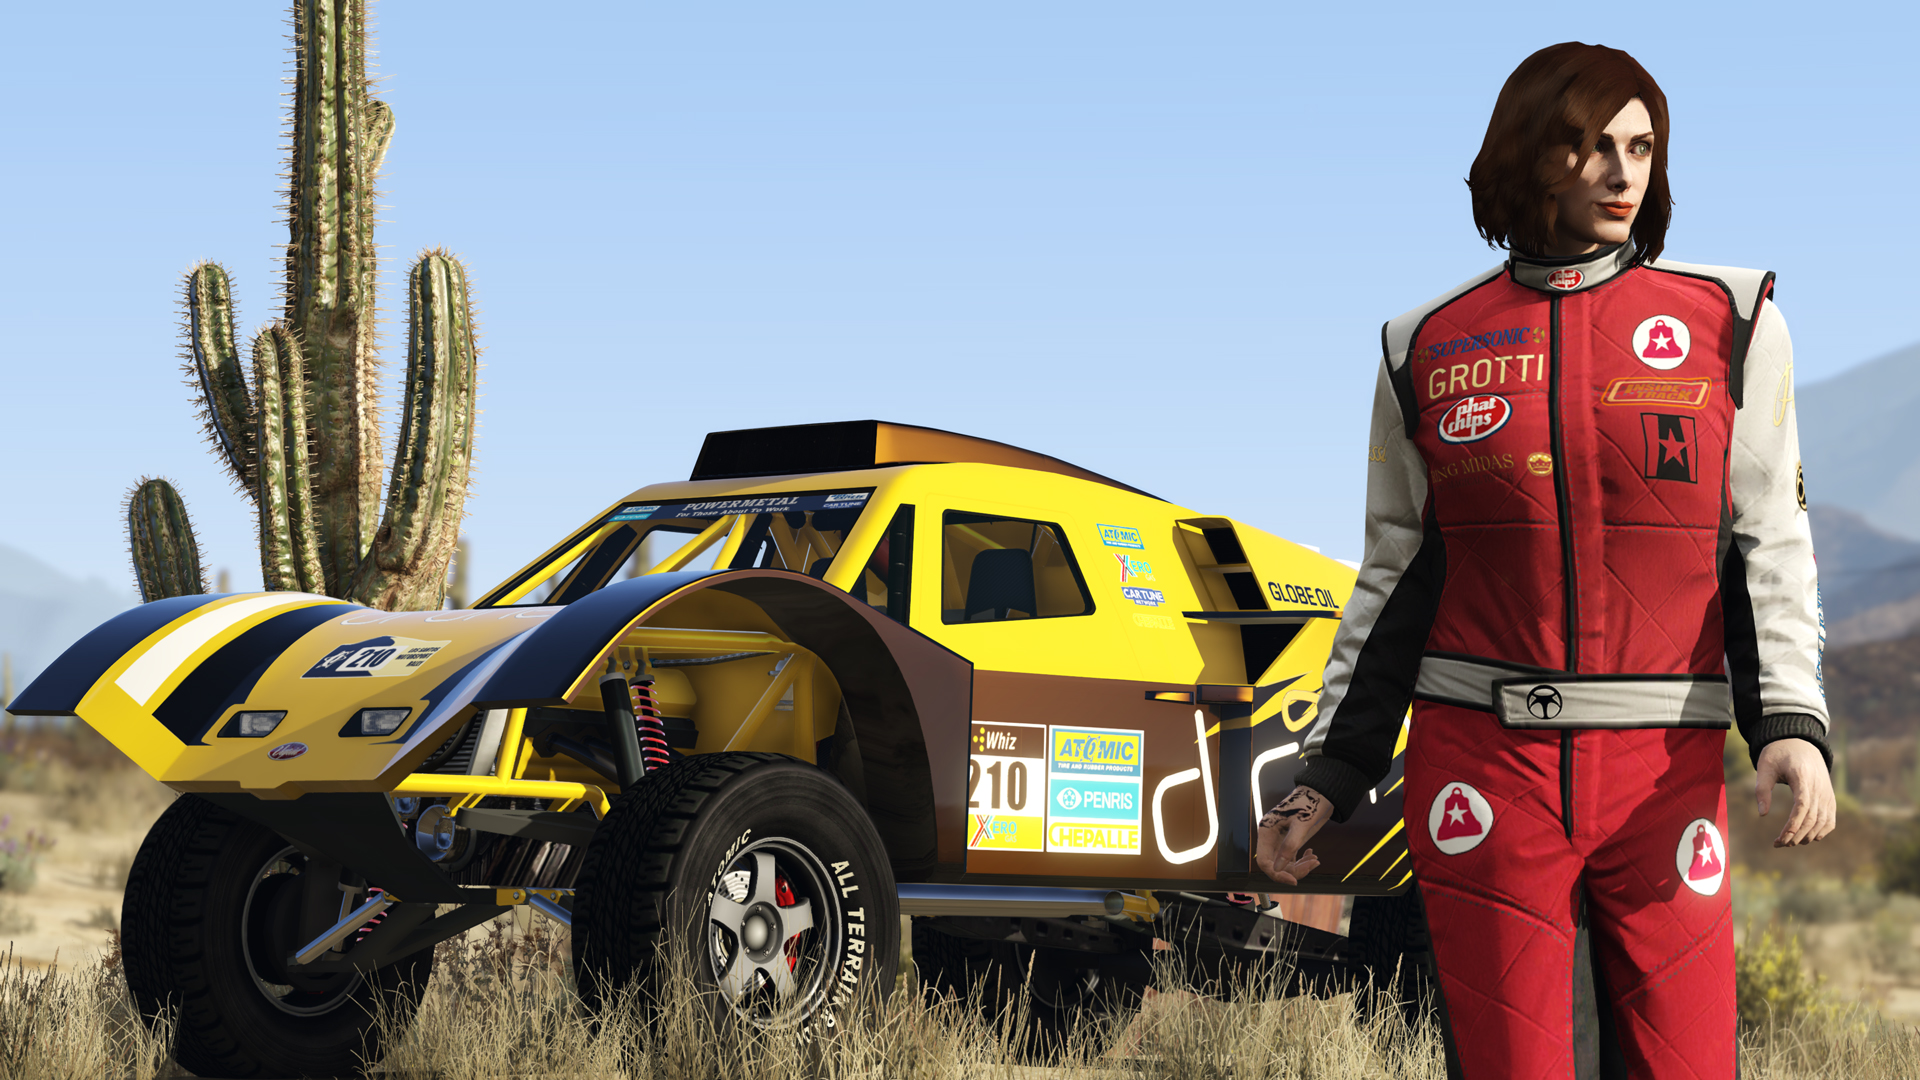 Free Vehicle Giveaway: The Lampadati Tropos Rallye - Rockstar Games